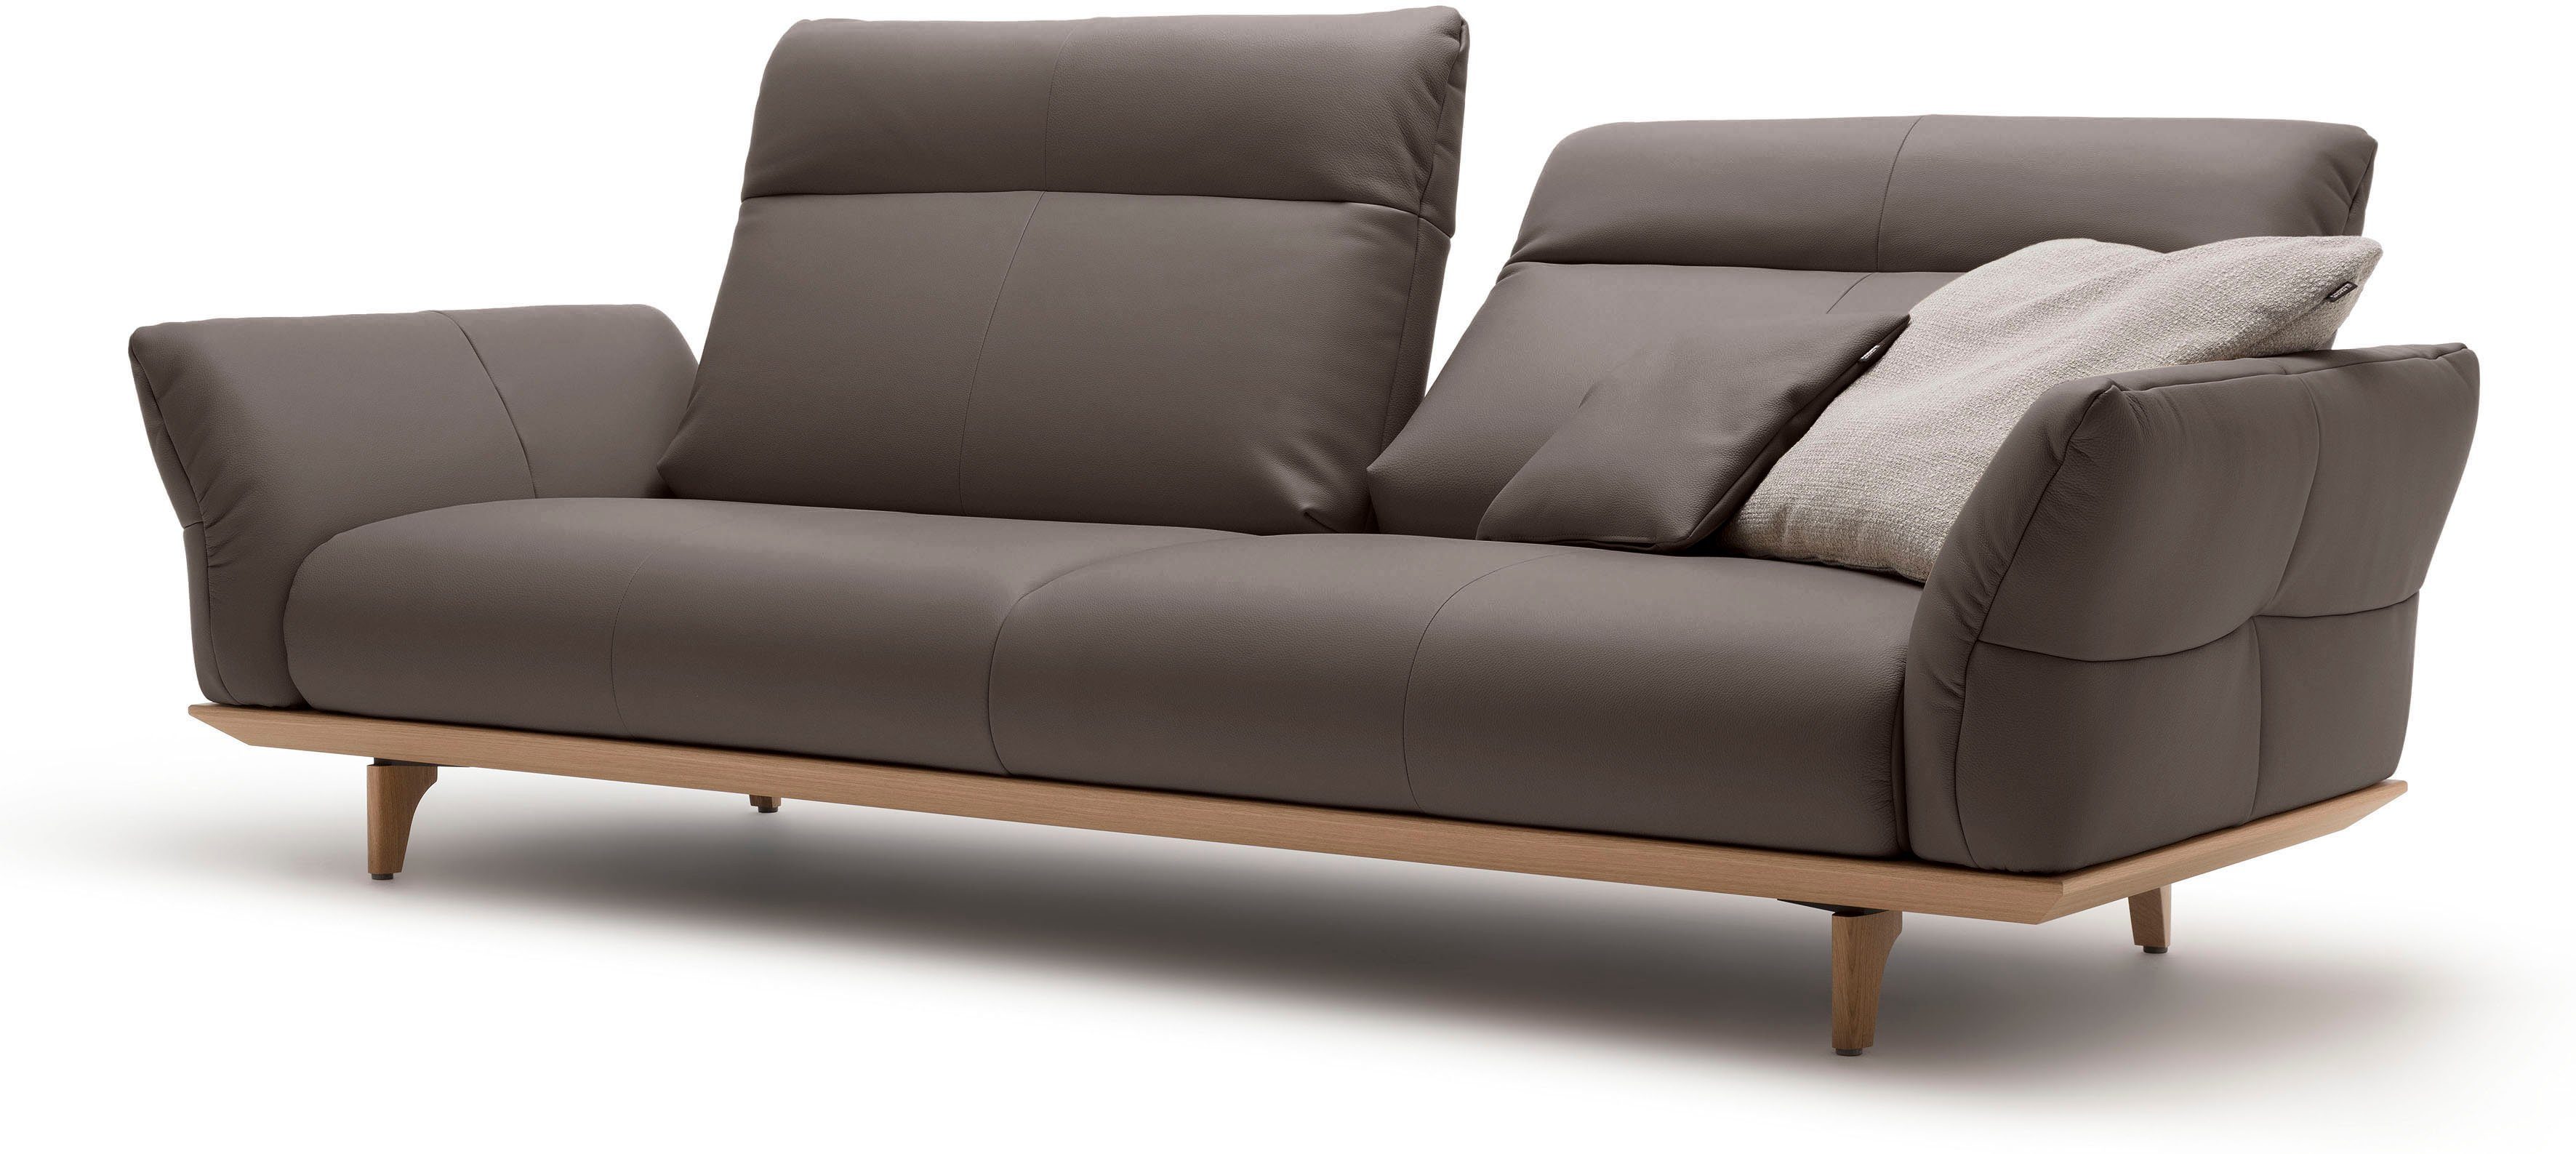 hülsta sofa 3,5-Sitzer Eiche, hs.460, cm in Füße 228 Sockel Breite natur, Eiche